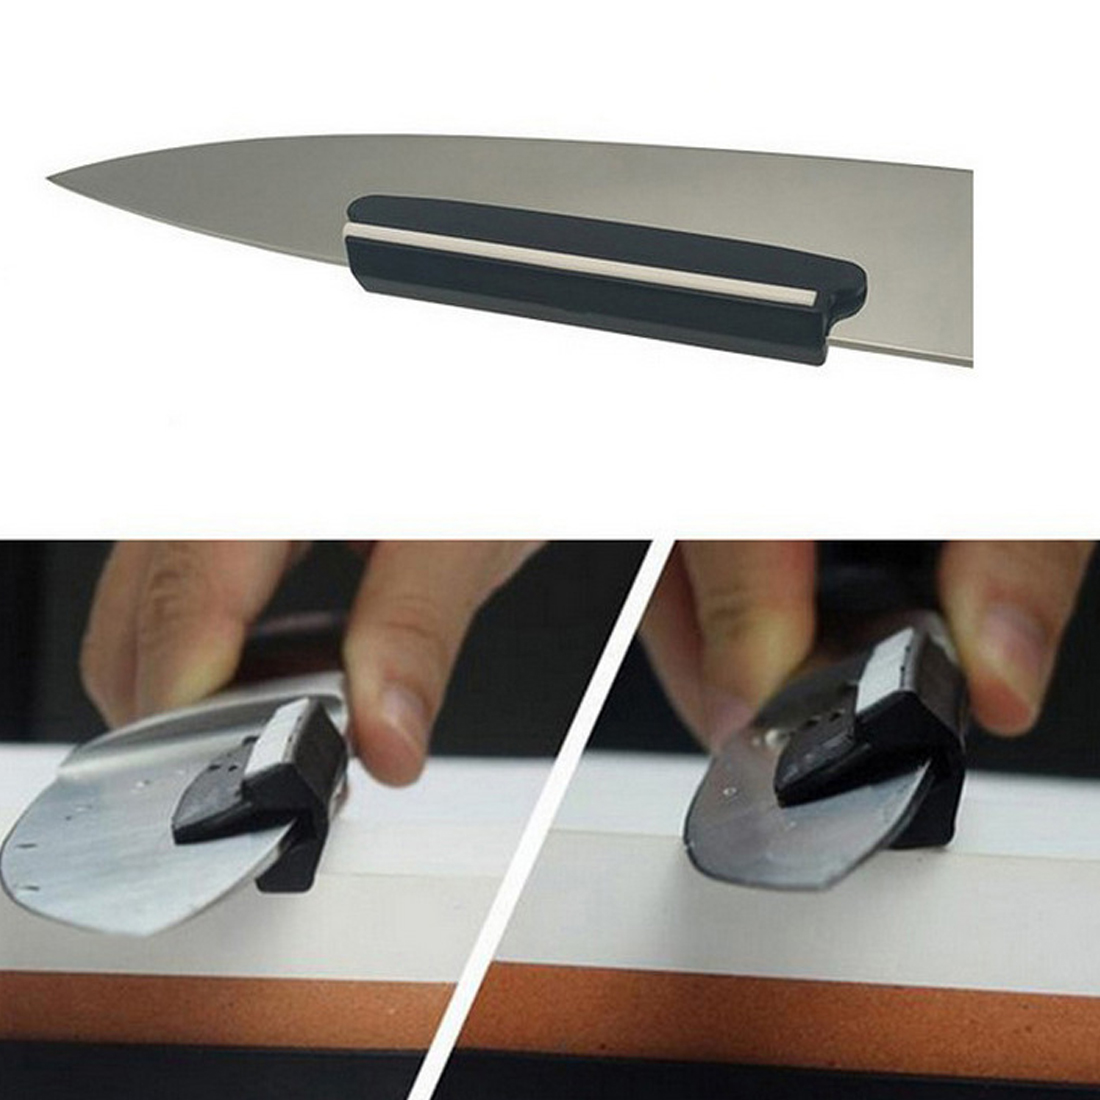  Ʈ     ̵  Ȩ  ϰϱ ǿ Ǽ縮 /High Best Selling Knife Sharpener Angle Guide Whetstone For Sharpening Home Living Practical